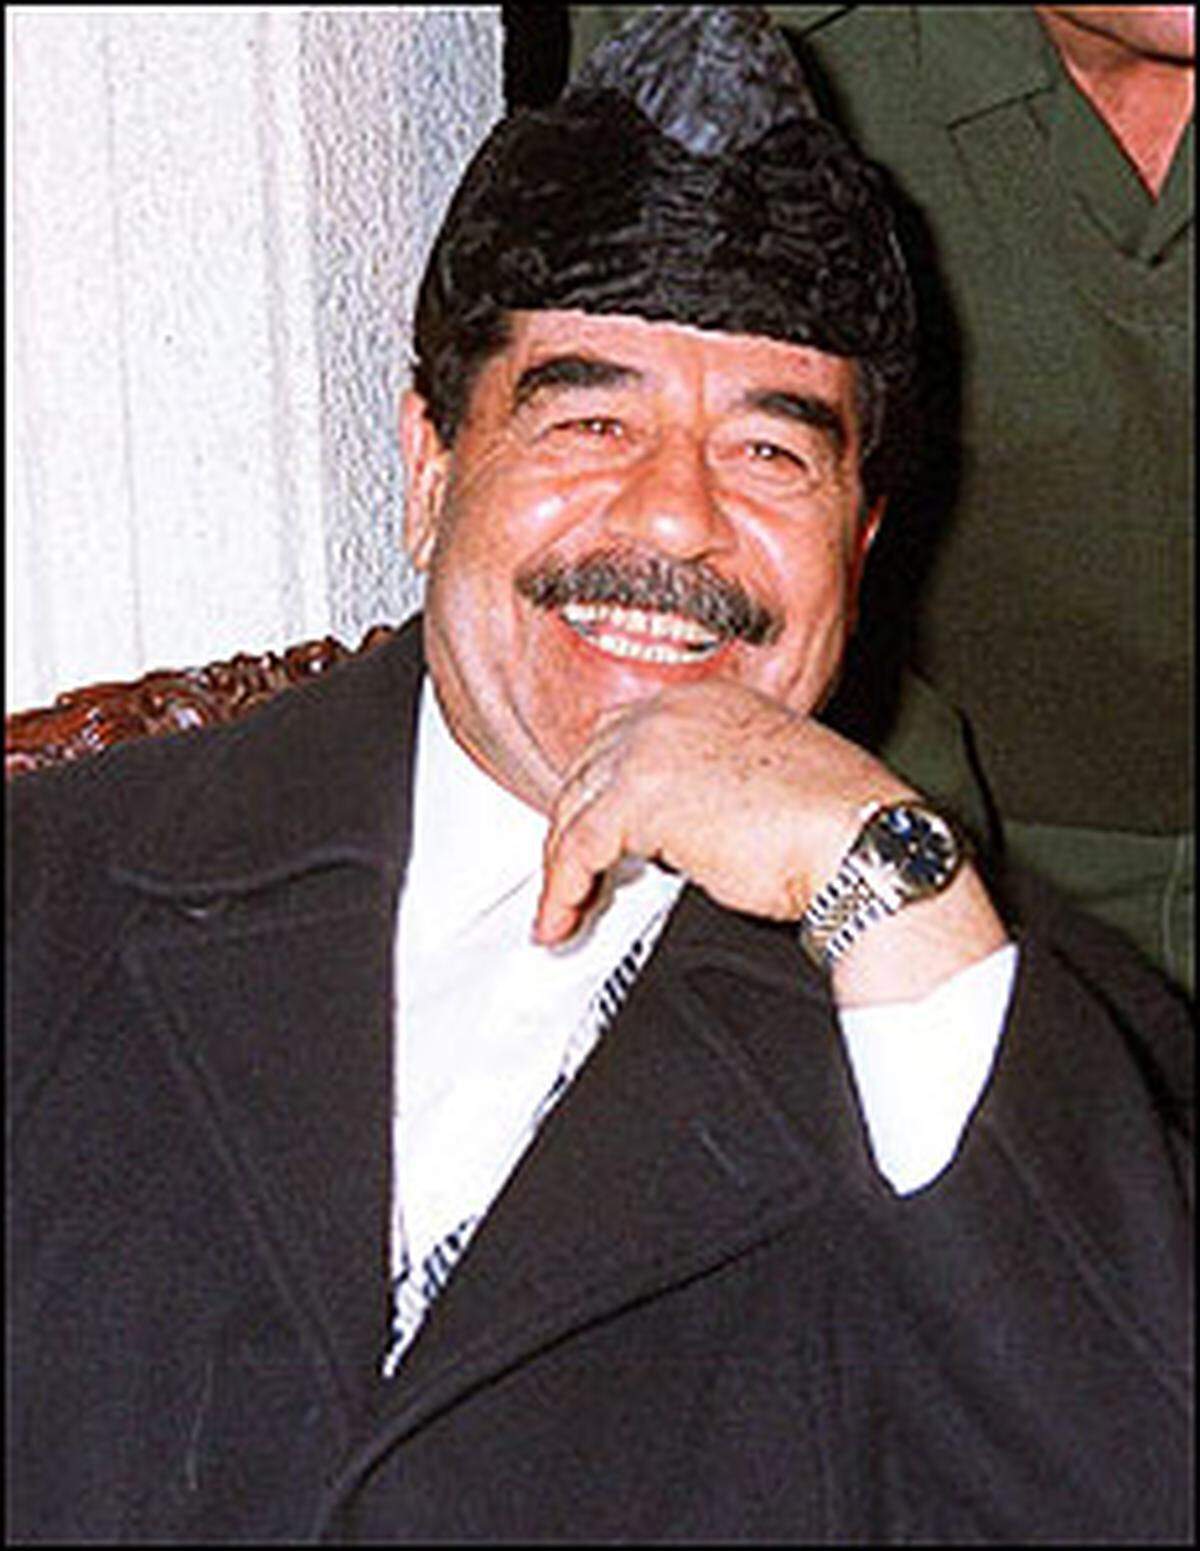 Diese Fähigkeit und seine antiamerikanische Propaganda haben Saddam in der arabischen Welt viel Sympathie eingebracht. Über seine Grausamkeit sahen seine Sympathisanten stets großzügig hinweg.